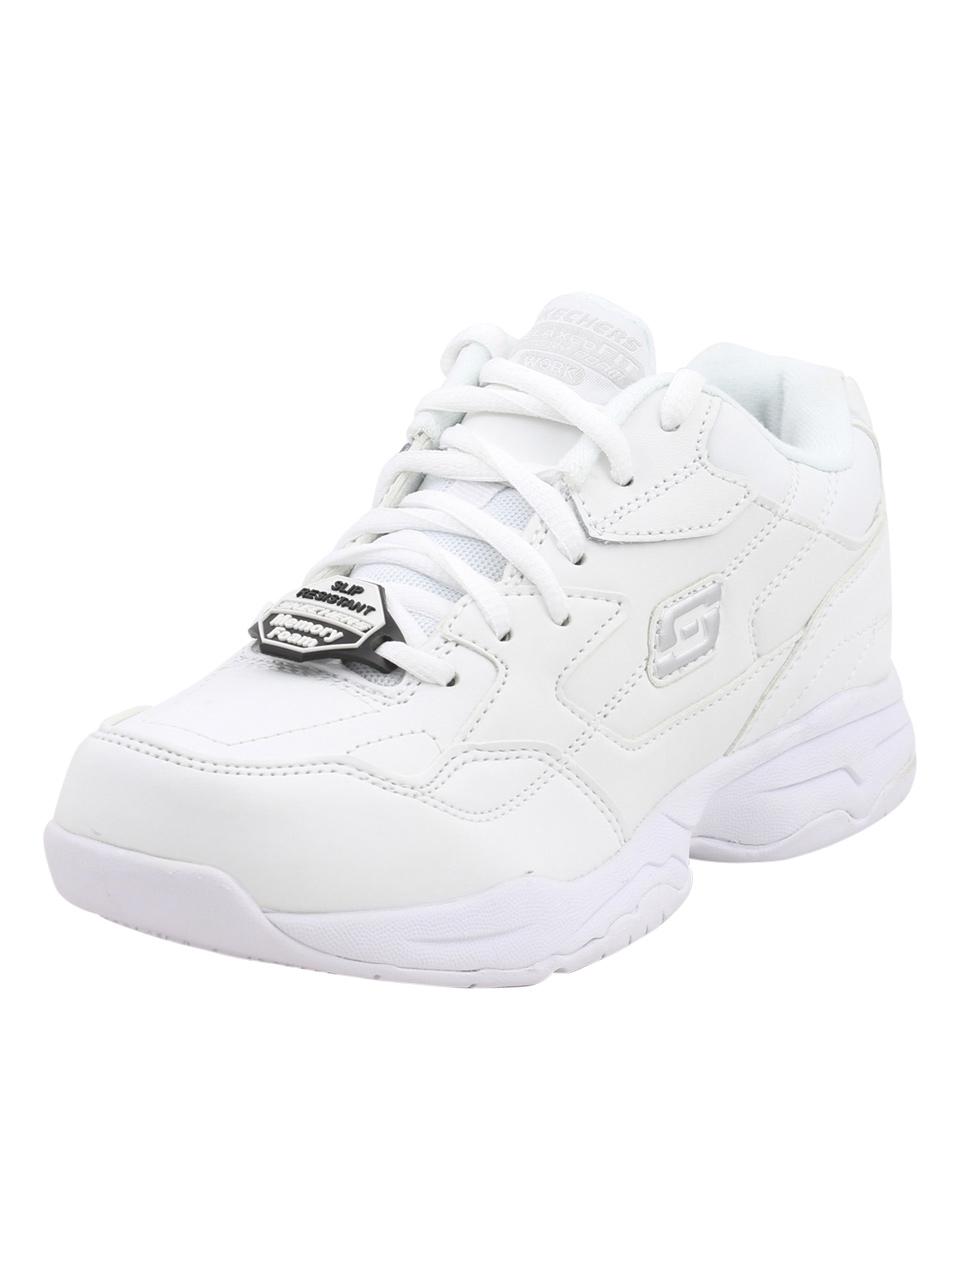 Skechers Work Women's Felton Albie Memory Foam Slip Resistant Sneakers Shoes - White - 11 B(M) US